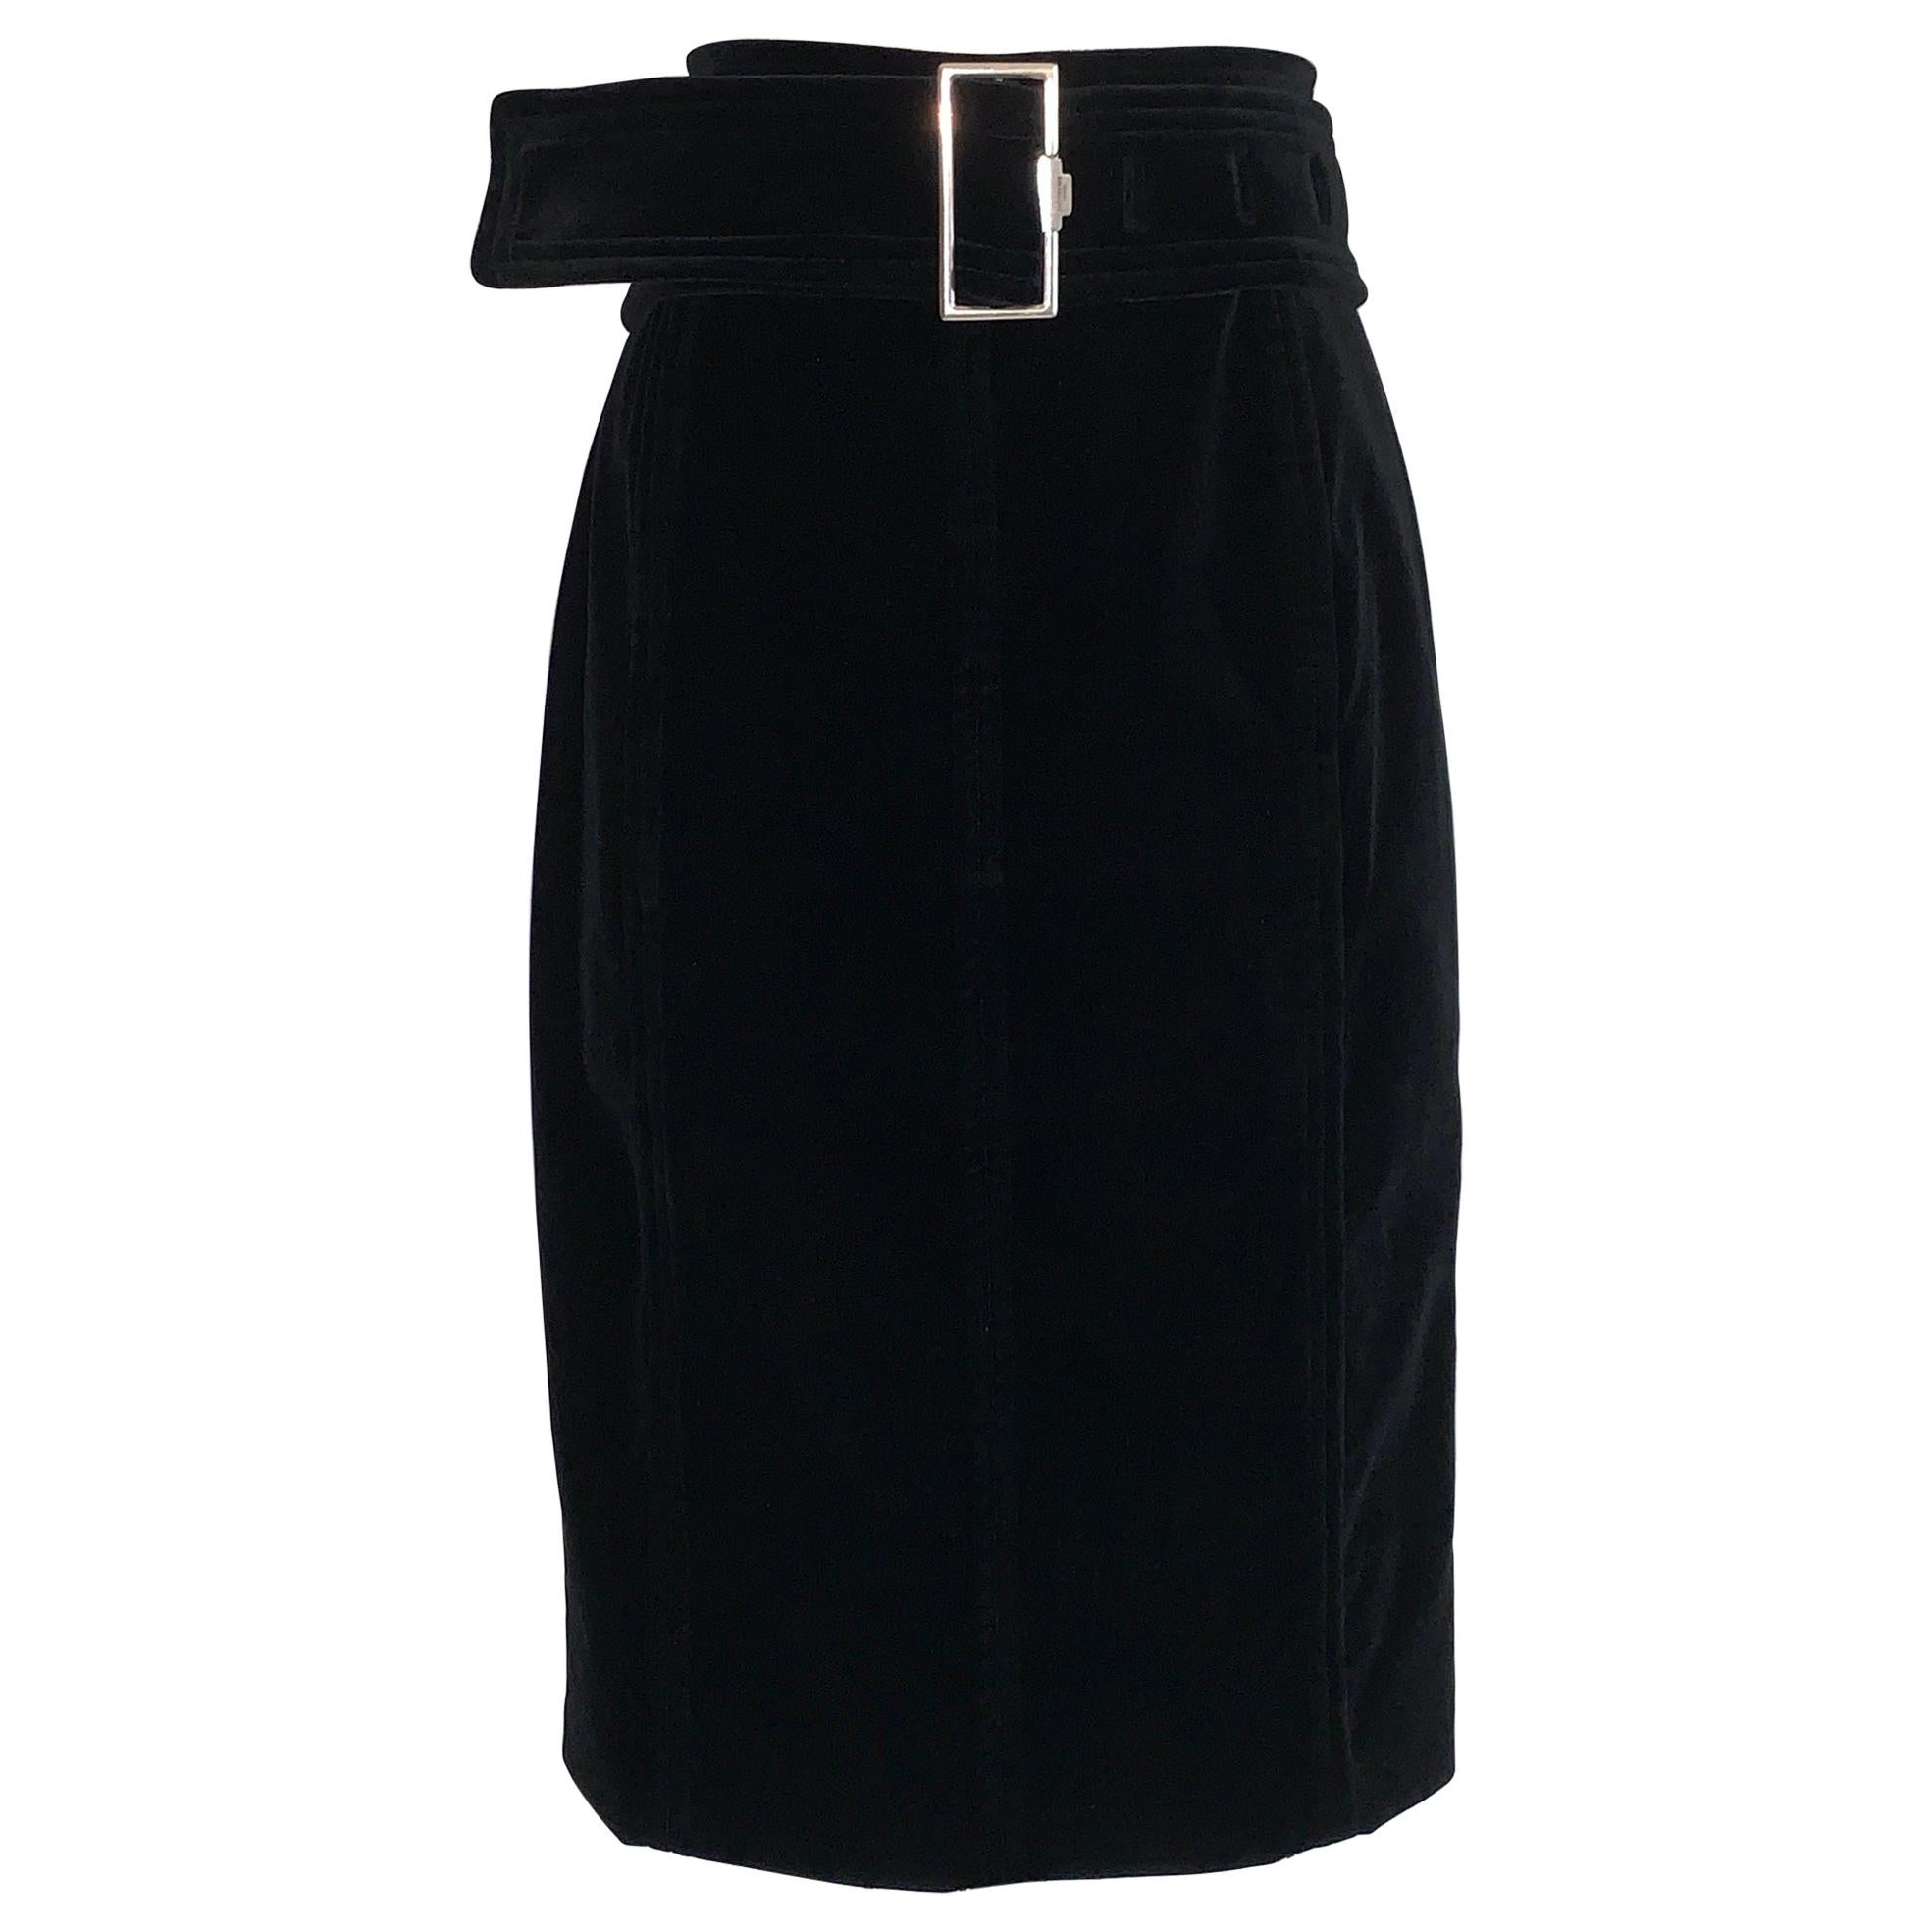 2000s Yves Saint Laurent Rive Gauche Black Velvet Pencil Skirt with Belt